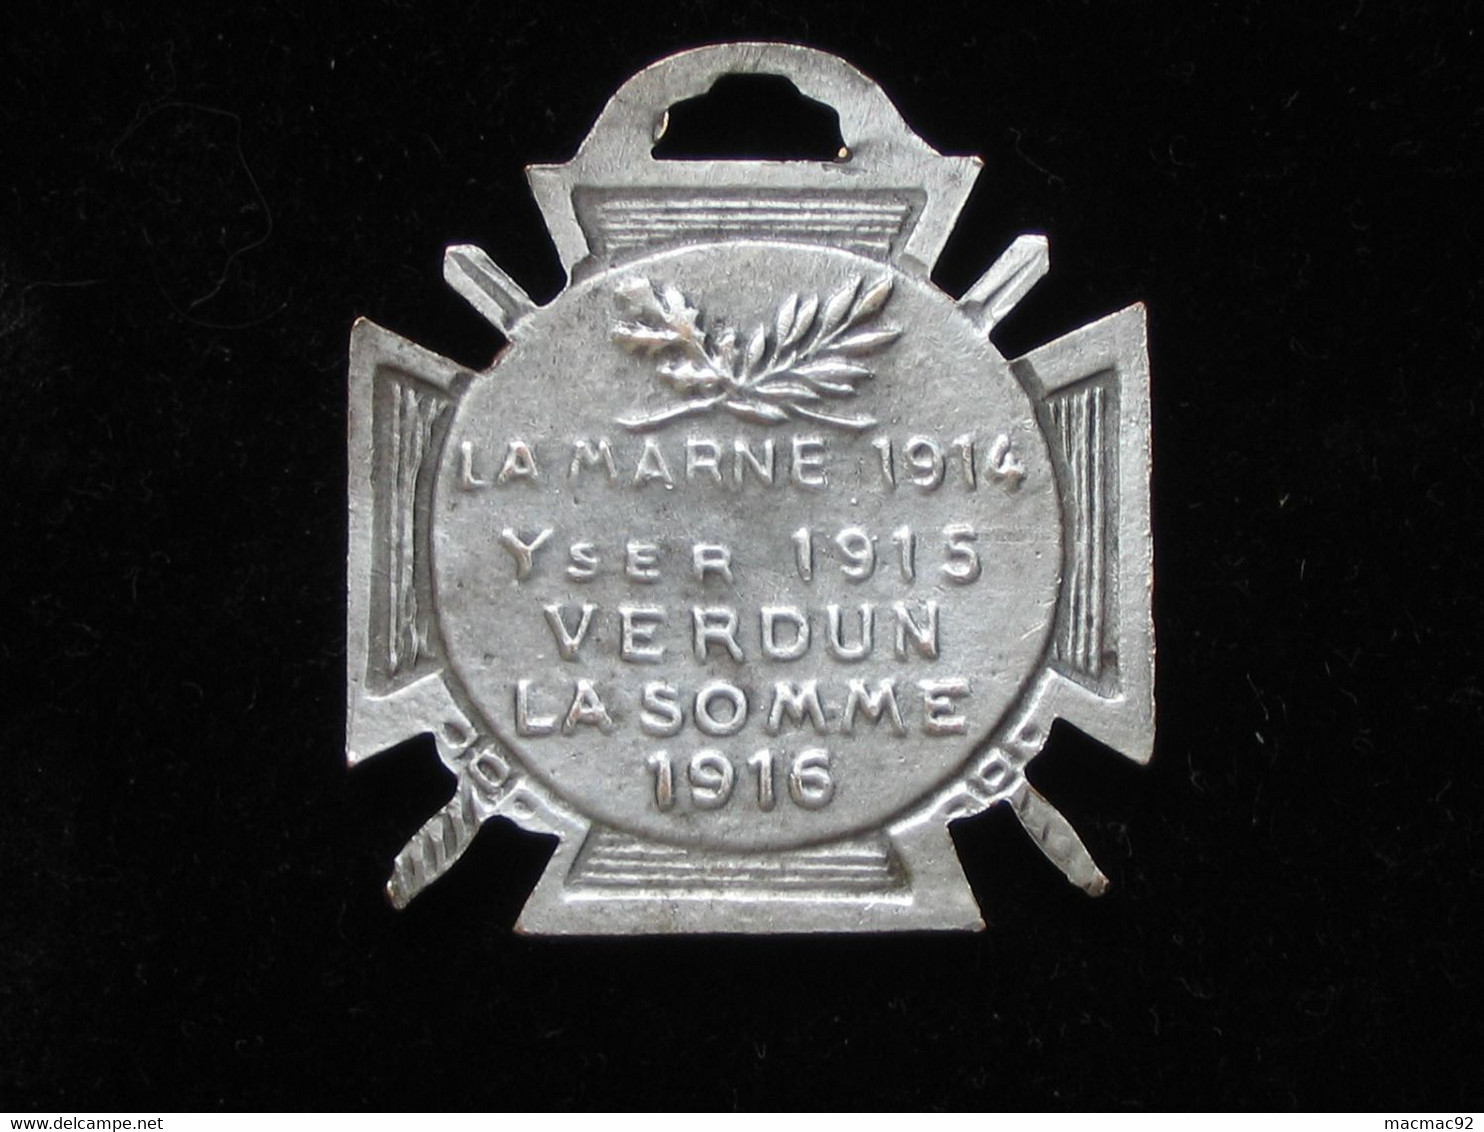 Décoration Journée Du Poilu 1915 - La Marne 1914 -Yser 1915 - Verdun - La Somme 1916   **** EN ACHAT IMMEDIAT **** - Francia